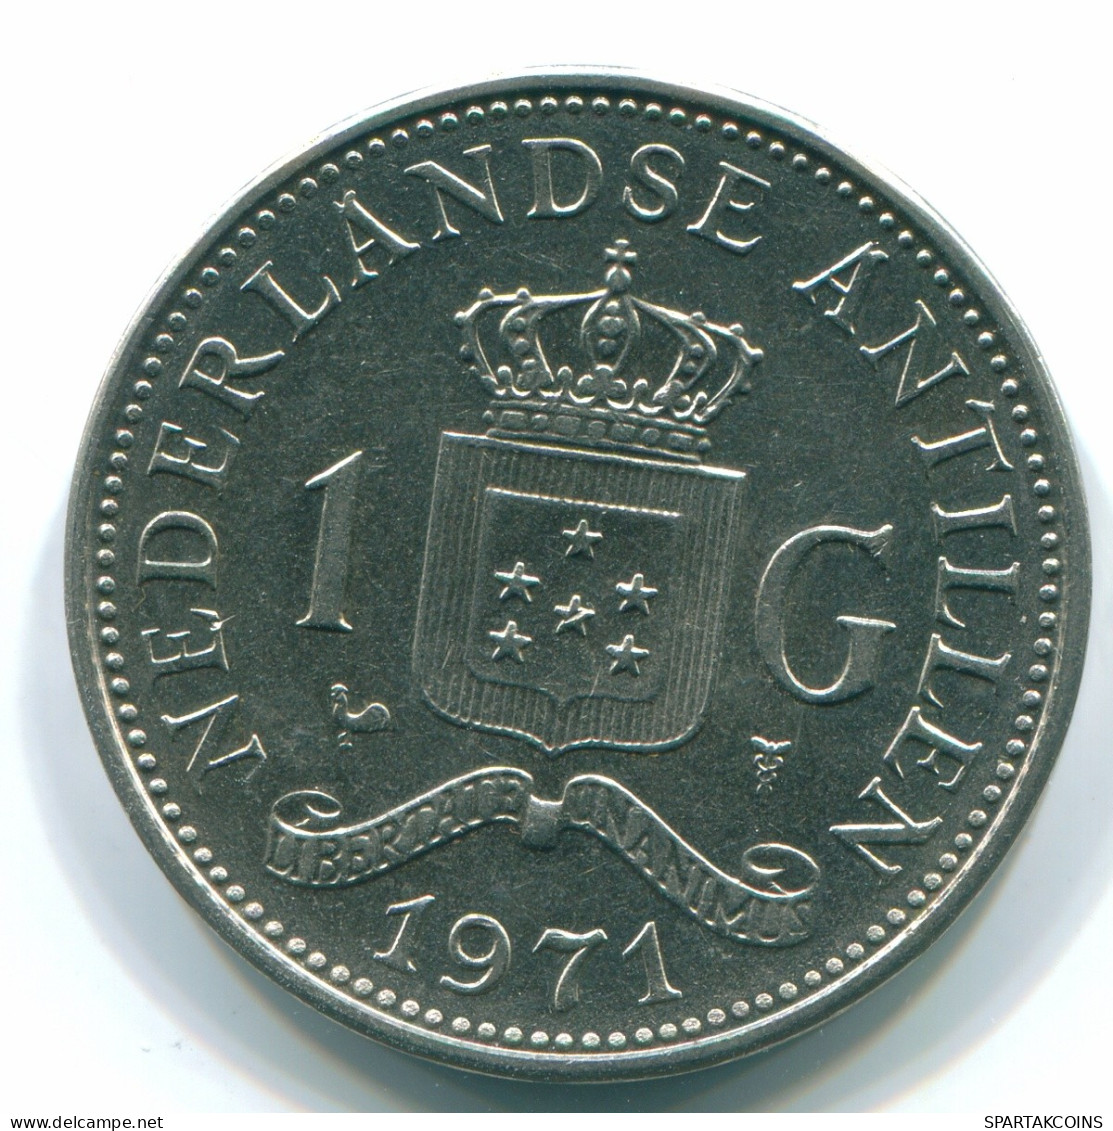 1 GULDEN 1971 NIEDERLÄNDISCHE ANTILLEN Nickel Koloniale Münze #S11993.D.A - Netherlands Antilles